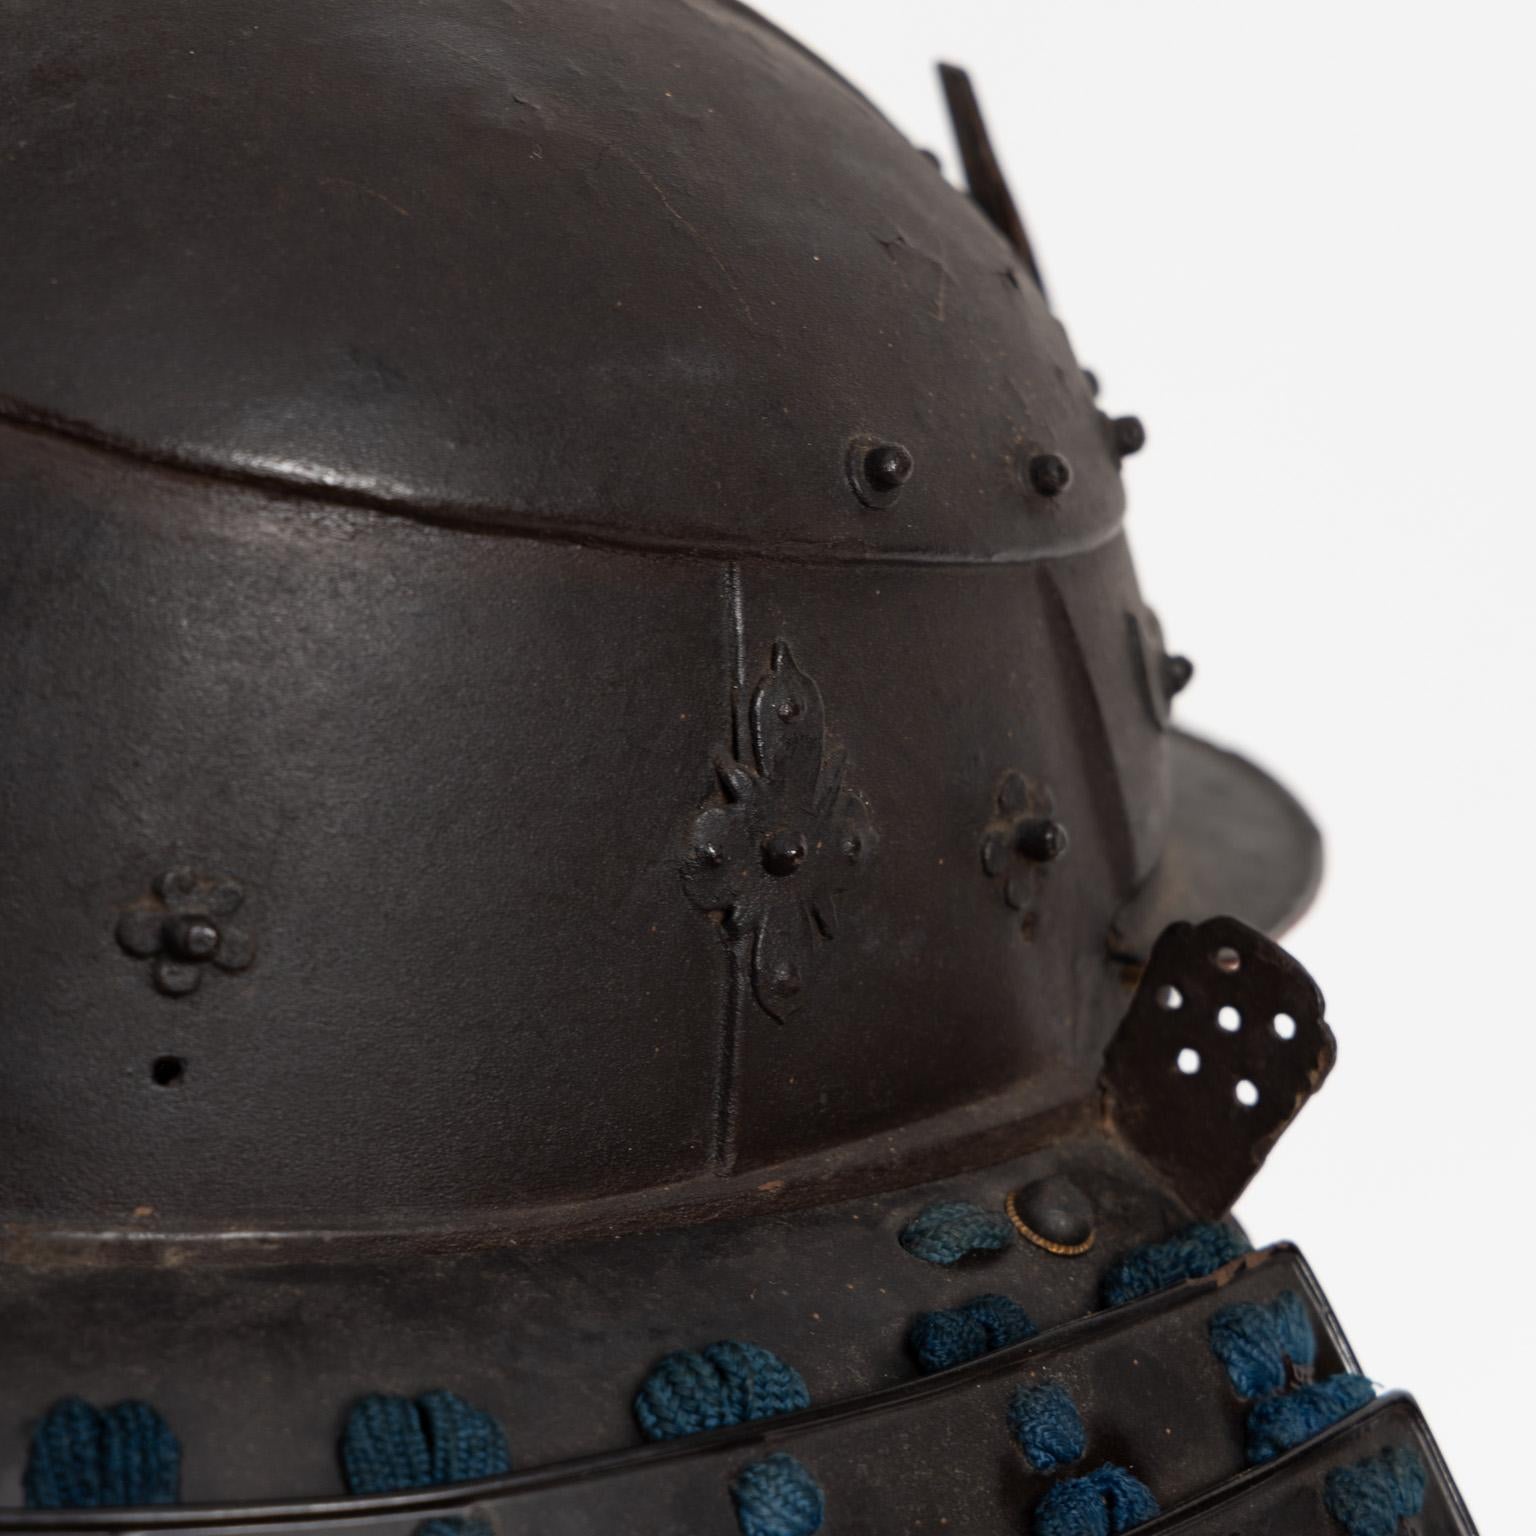 Okitenugui kabuto
Samurai-Helm in Form eines Kopftuches
Saika, frühe Edo-Periode, 17. Jahrhundert

Die Waffenschmiede von Haruta, die Anfang des 17. Jahrhunderts in die Provinz Kii zogen, nahmen den Namen von dem Dorf Saika in der Nähe von